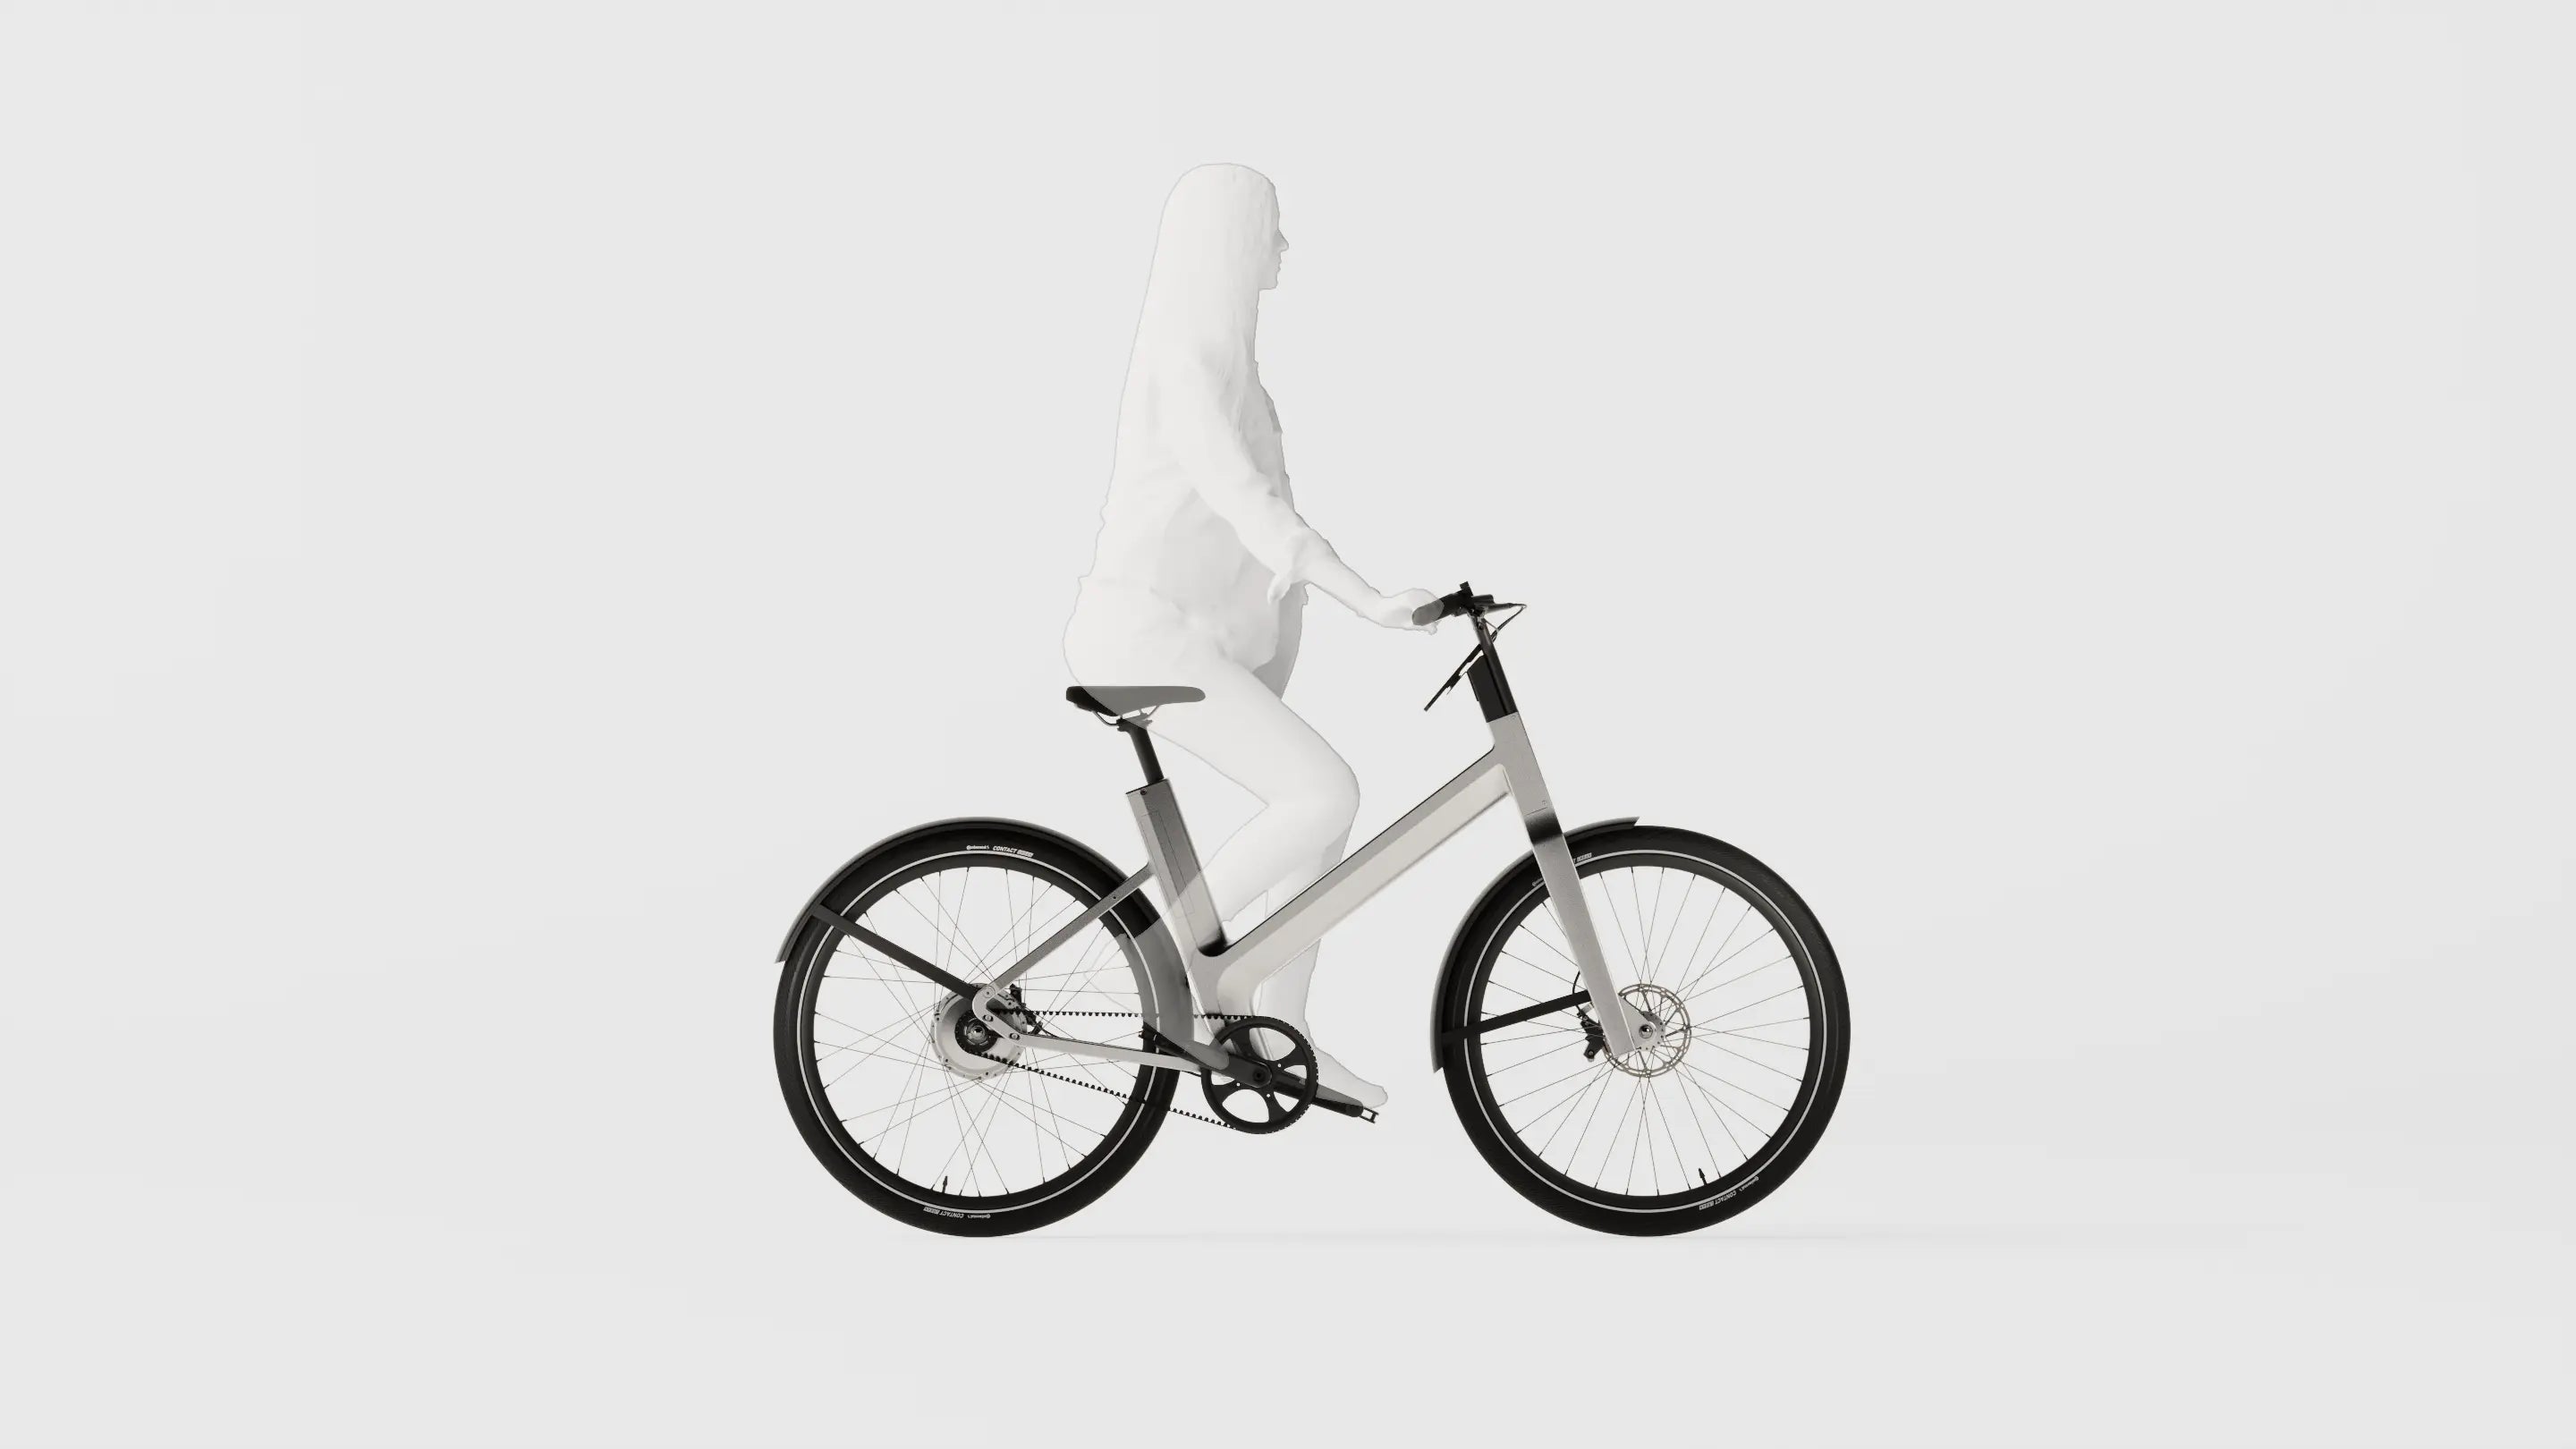 Vélo anod avec position de conduite et posture droite haute et confortable